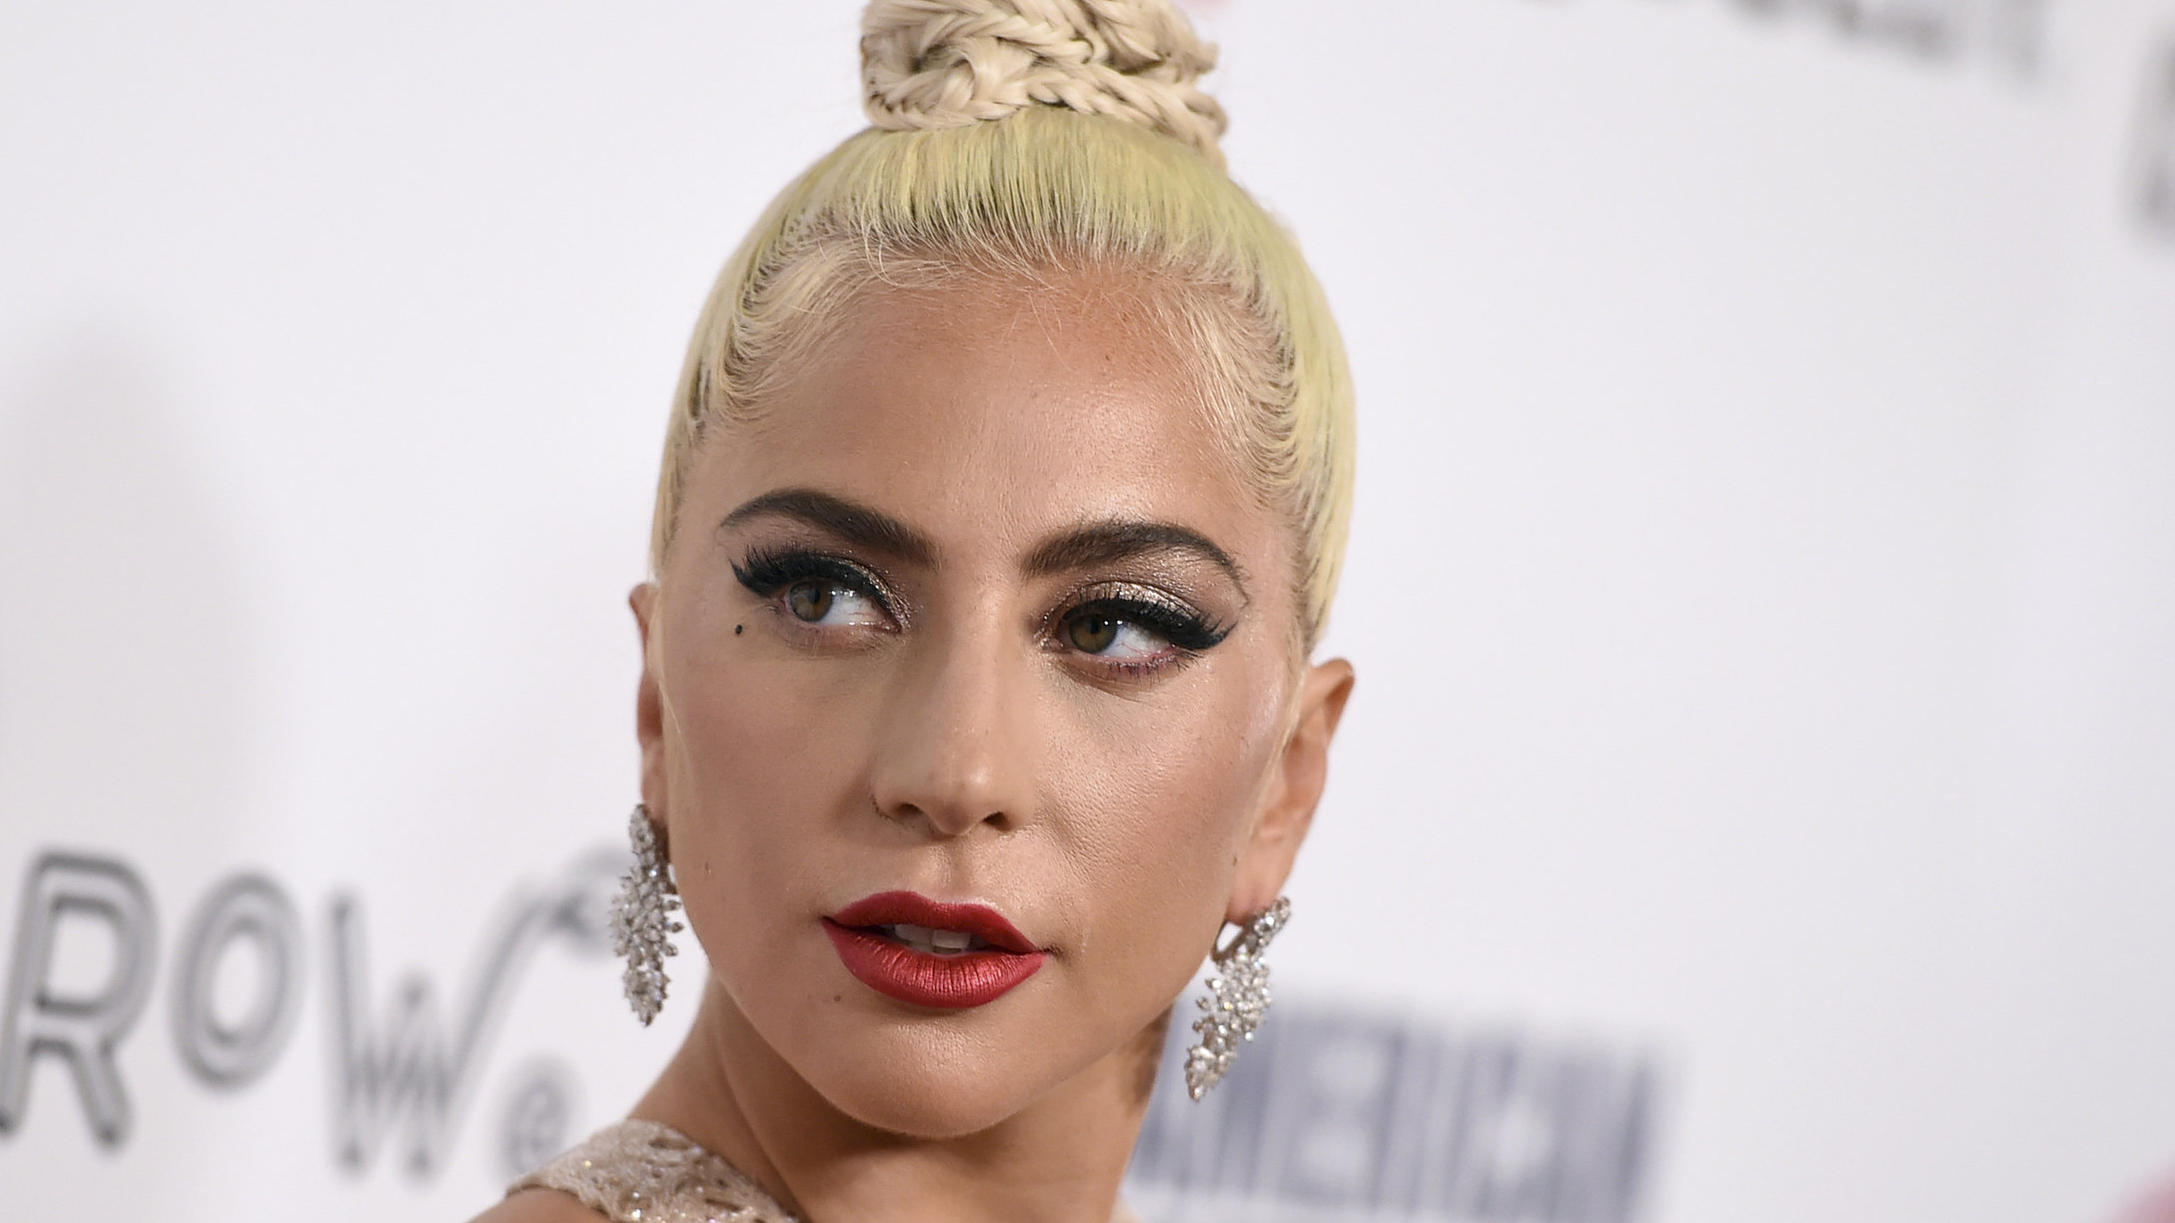 ARCHIV - 29.11.2018, USA, Beverly Hills: Lady Gaga, amerikanischer Pop-Star, kommt zur Verleihung des American Cinematheque Awards. (zu dpa «Lady Gaga zeigt sich als «Gucci»-Ehefrau - mit Adam Driver») Foto: Jordan Strauss/Invision/AP/dpa +++ dpa-Bil